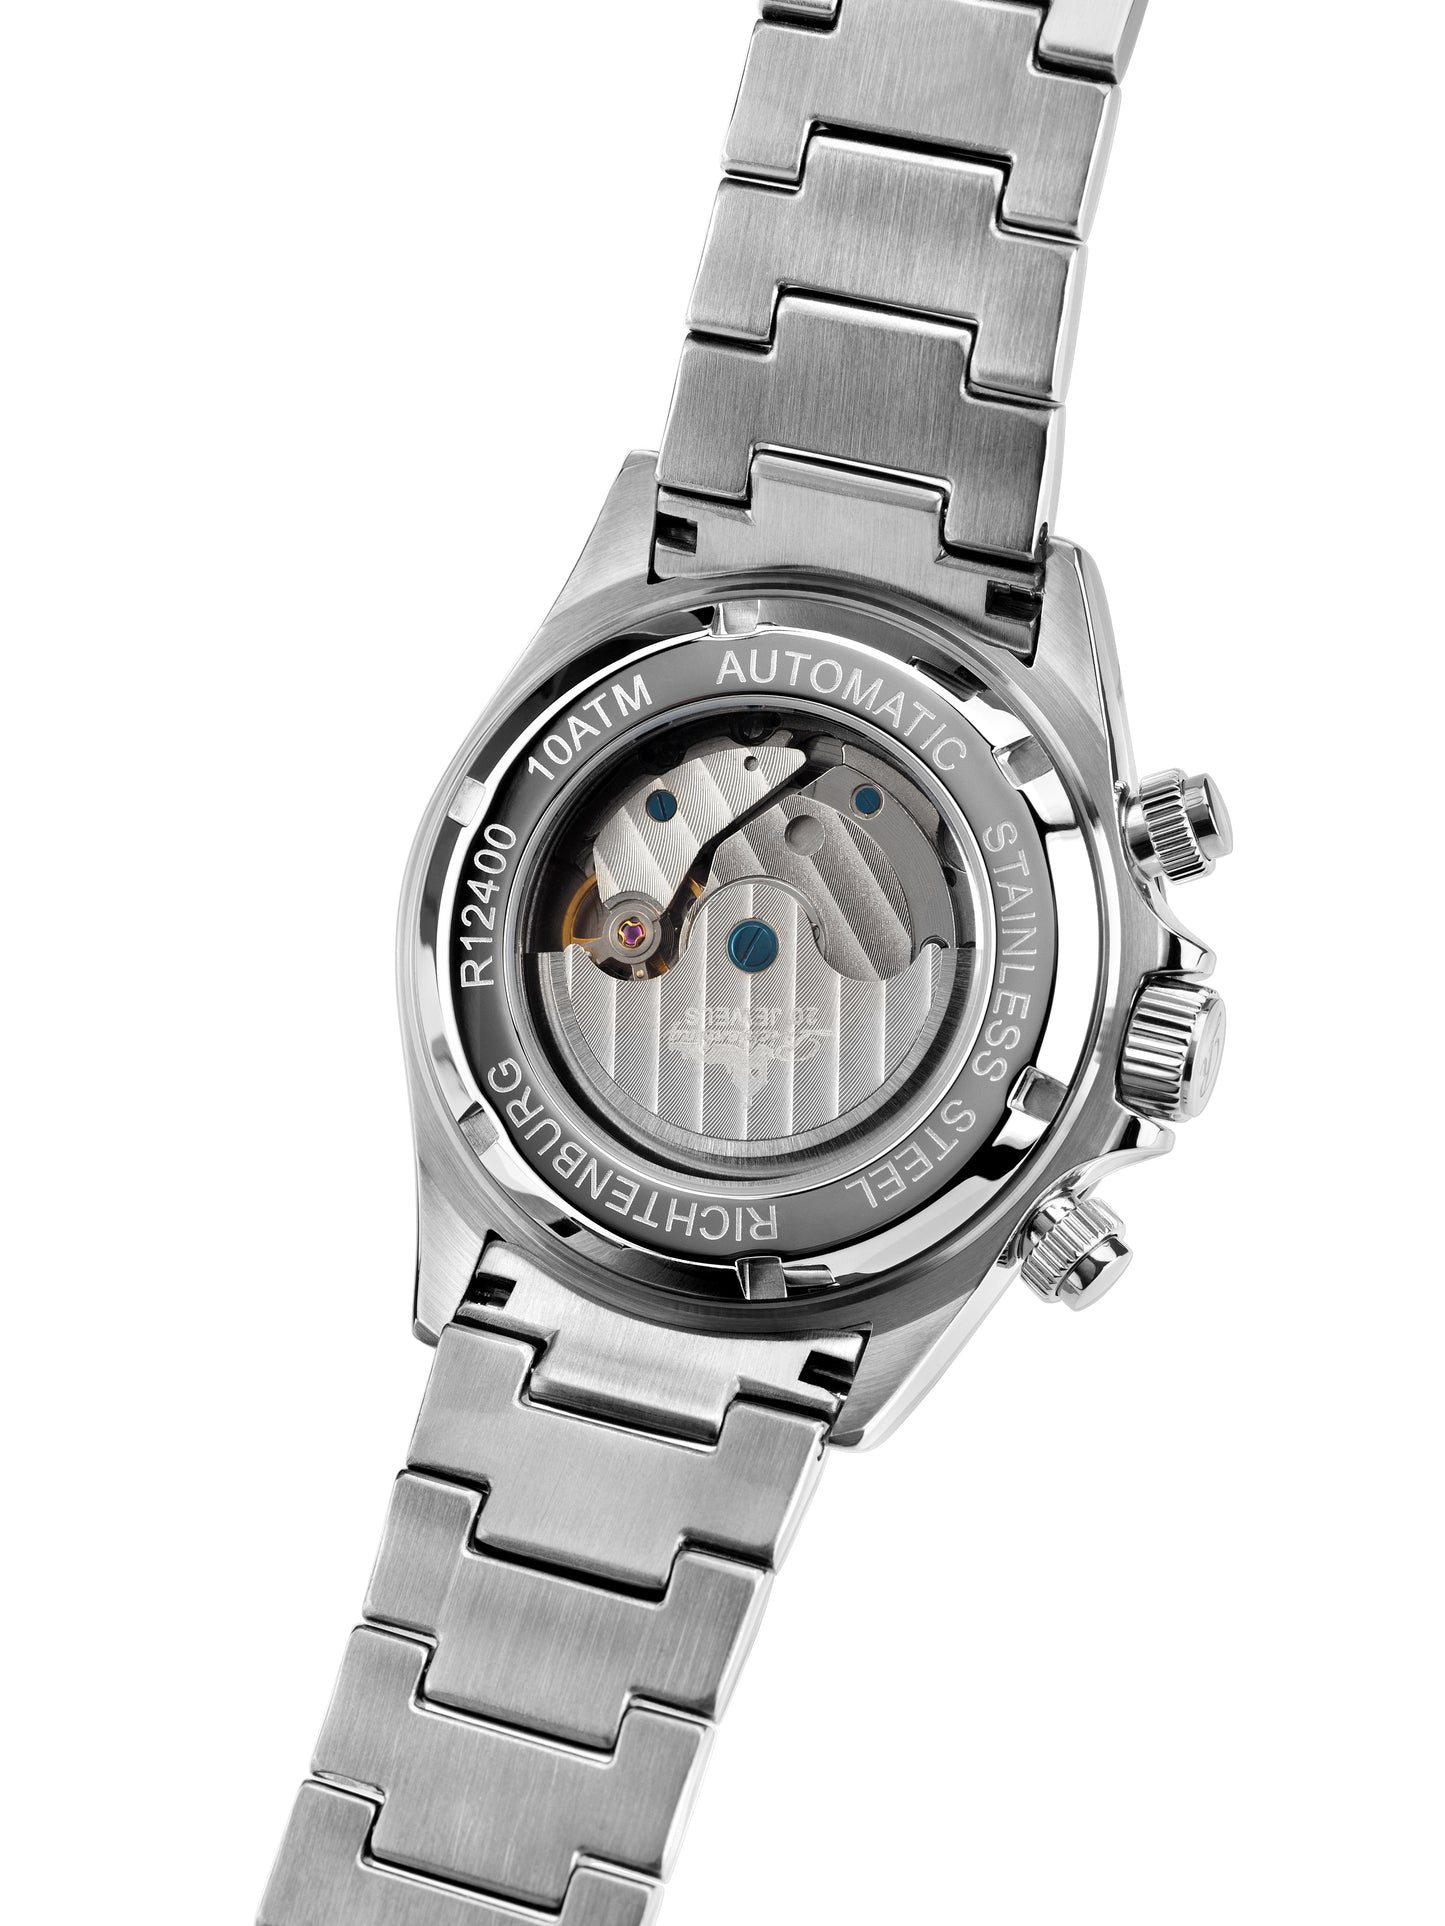 Automatic watches — Fastpace — Richtenburg — steel black